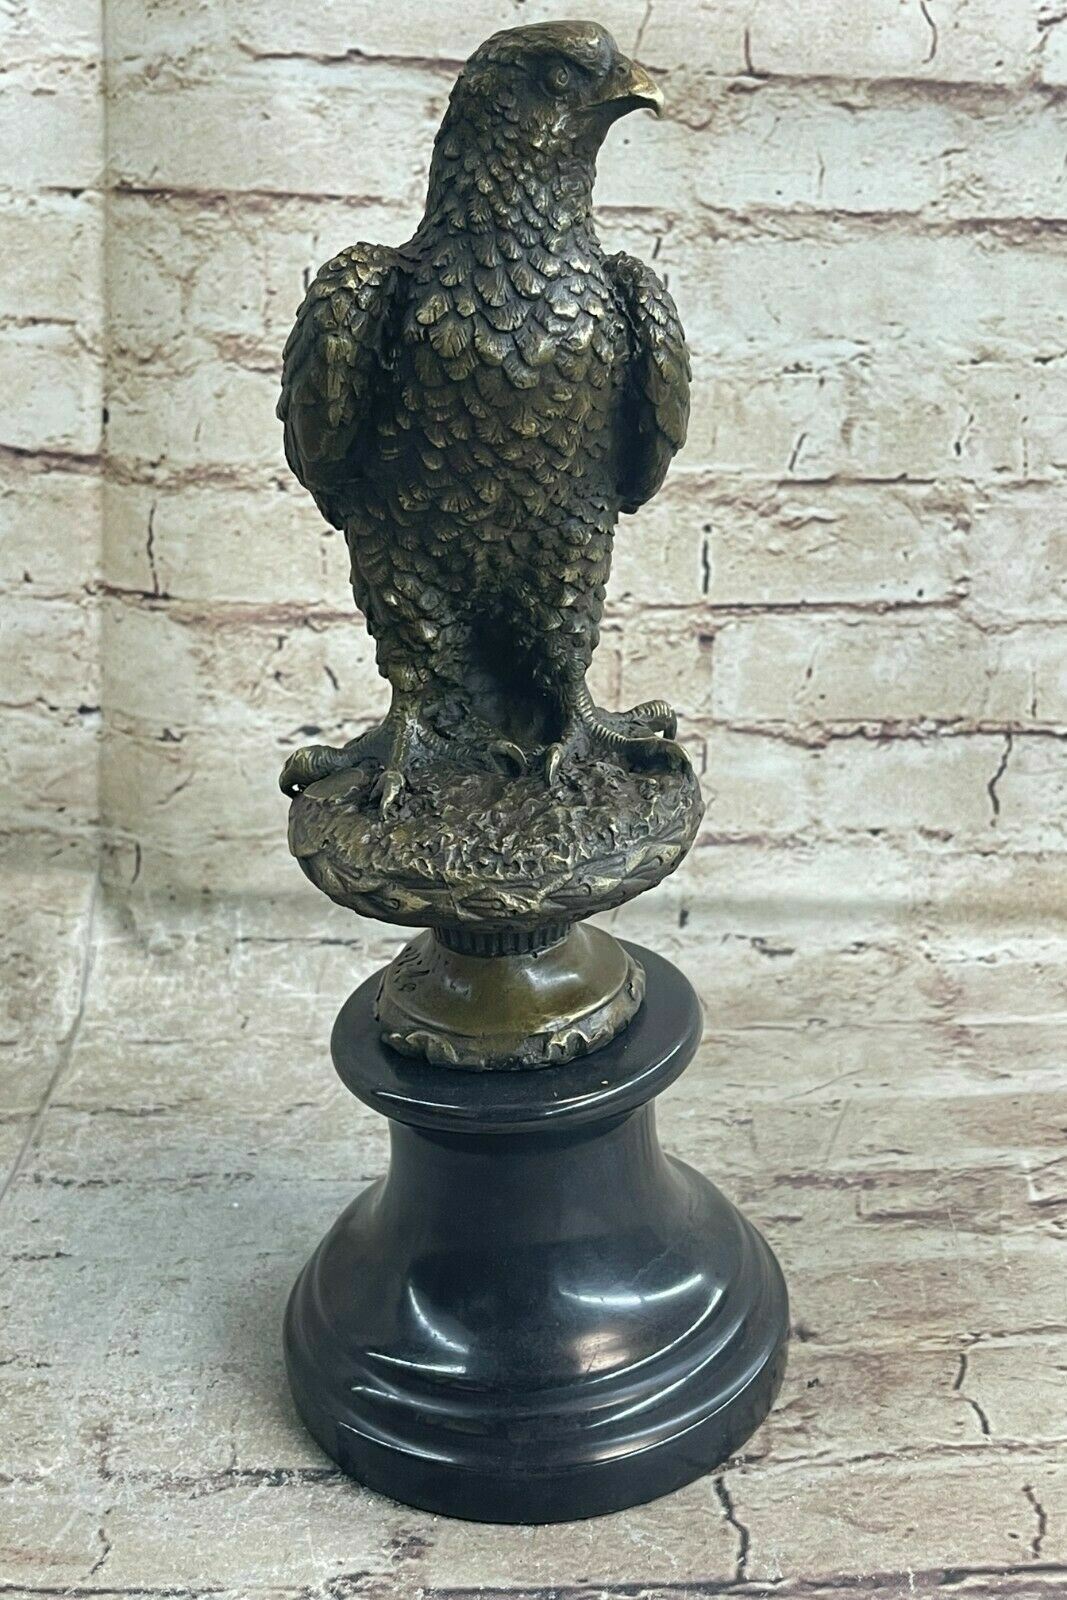 MAGESTIC Perched Bird of Prey Bronze Statue Sculpture Bald Eagle Hawk Falcon Art